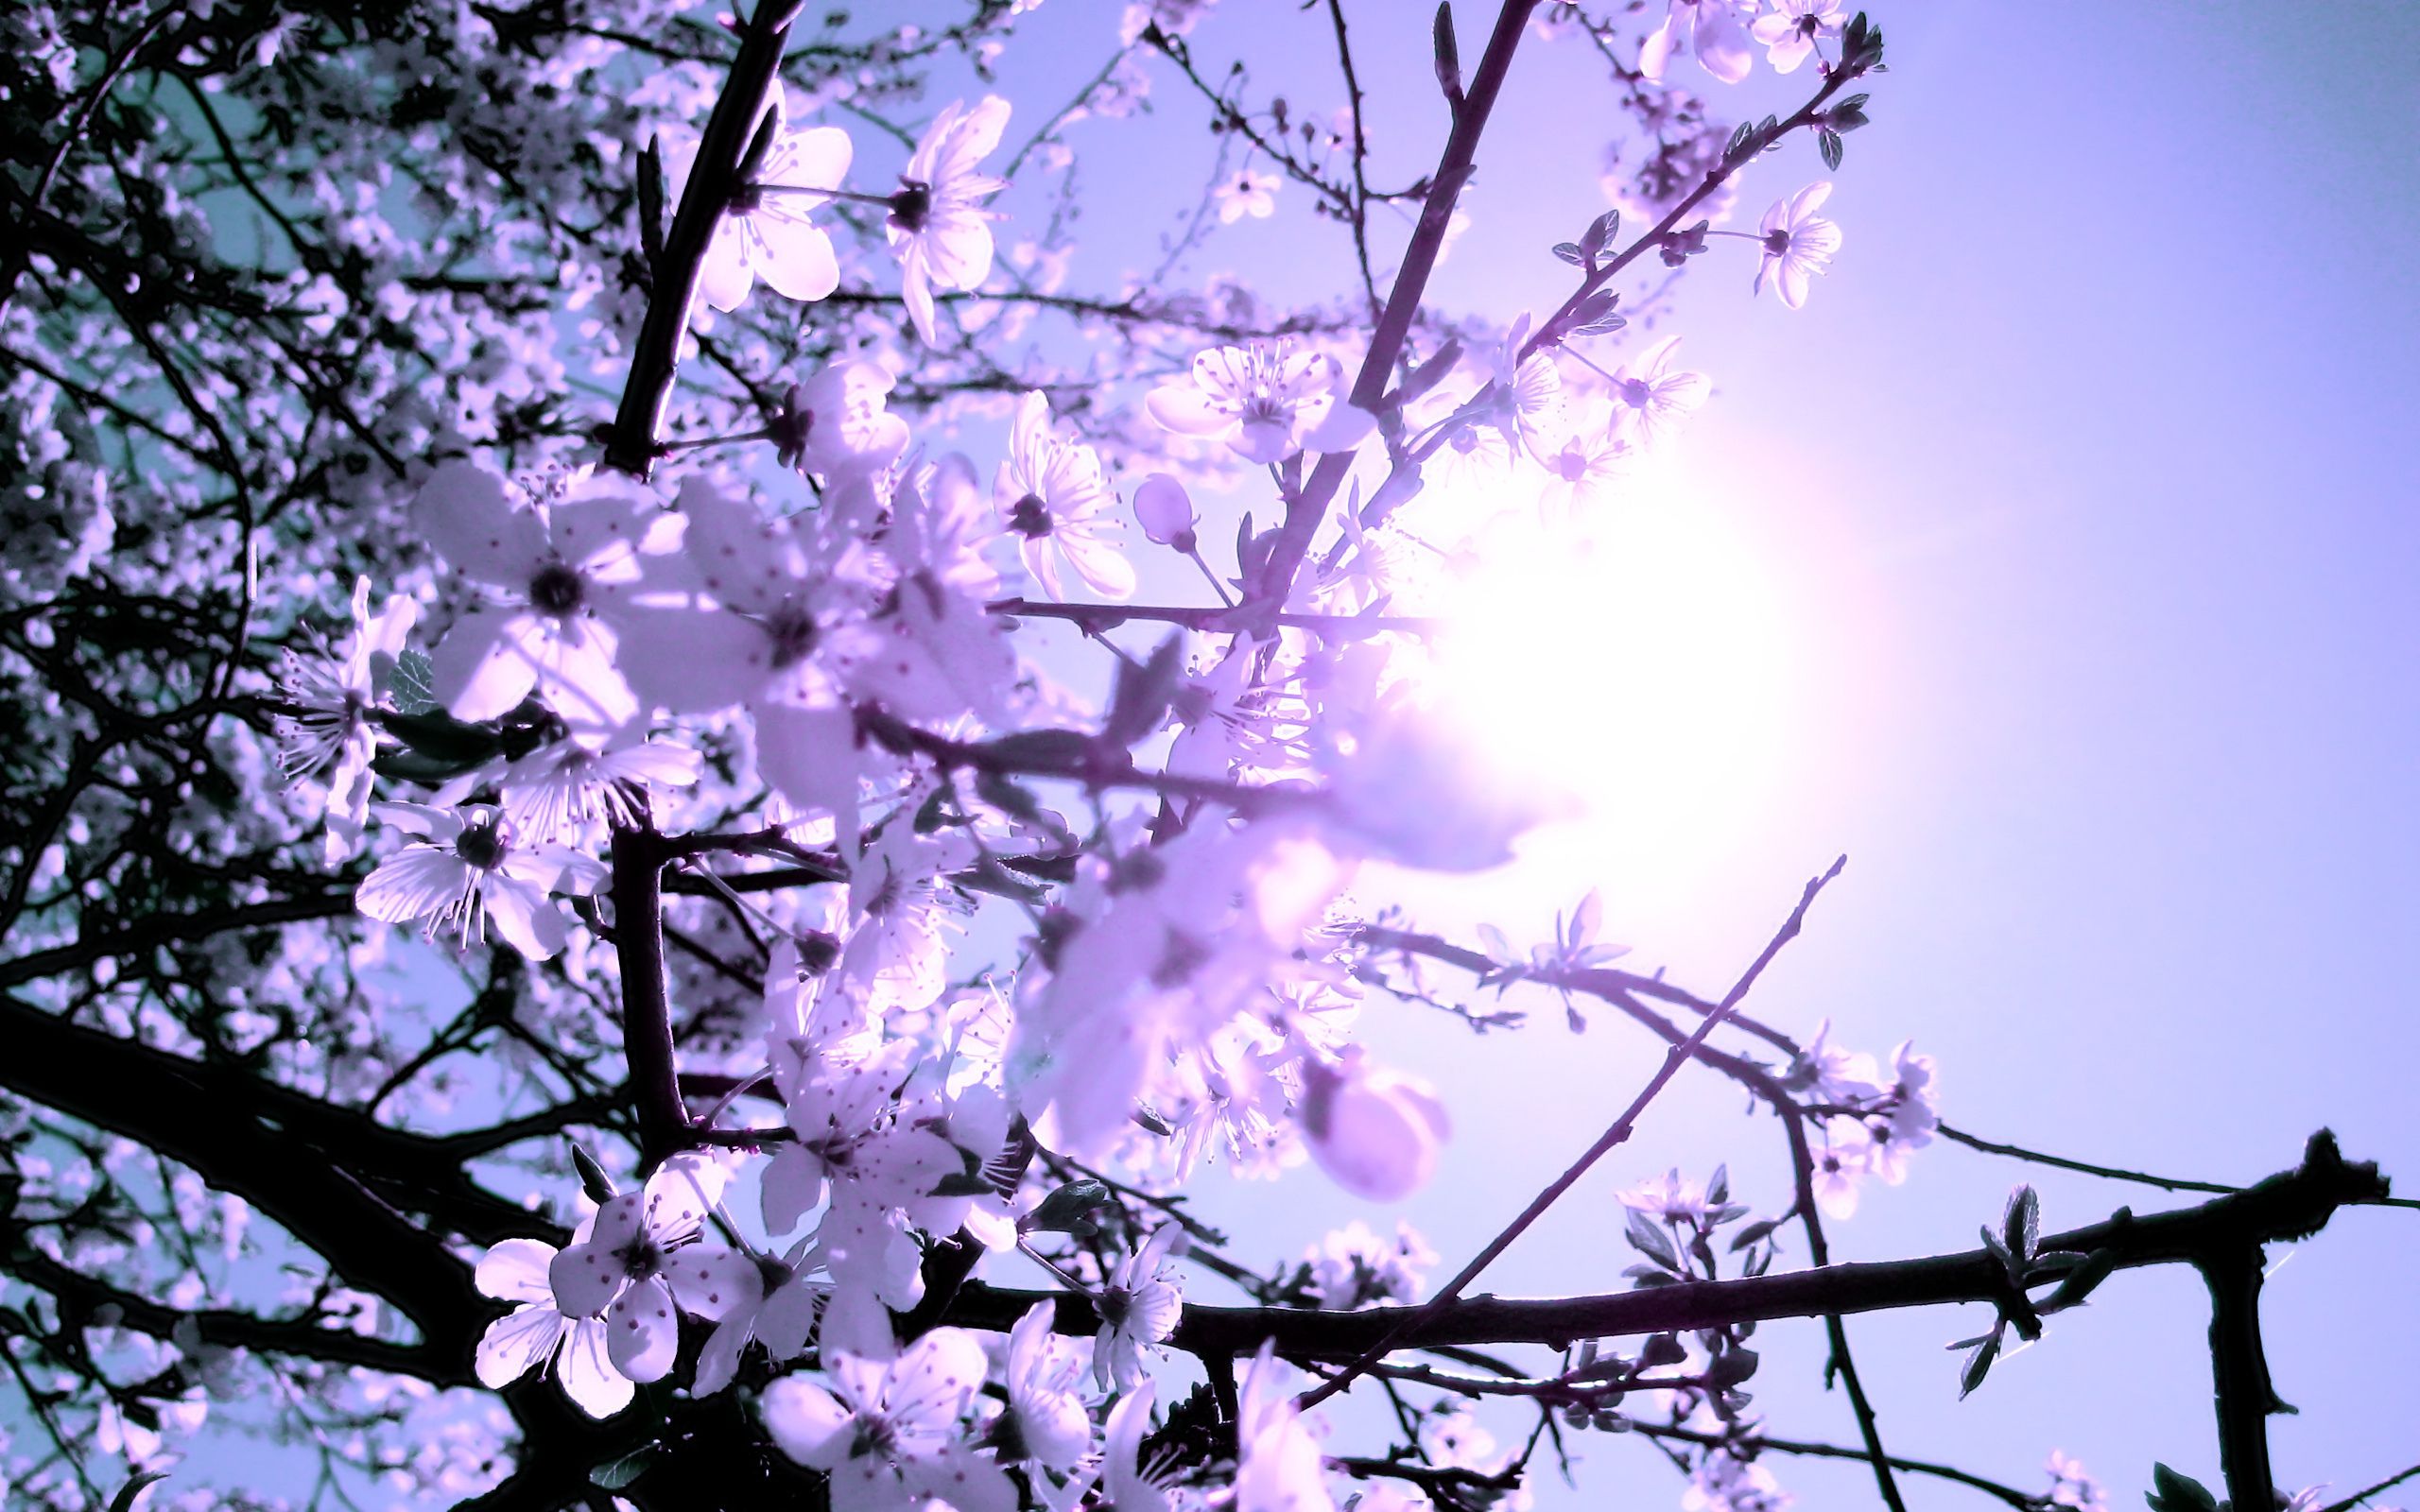 والپیپر شاخه ی درخت با شکوفه های بنفش در آفتاب برای پس زمینه دسکتاپ